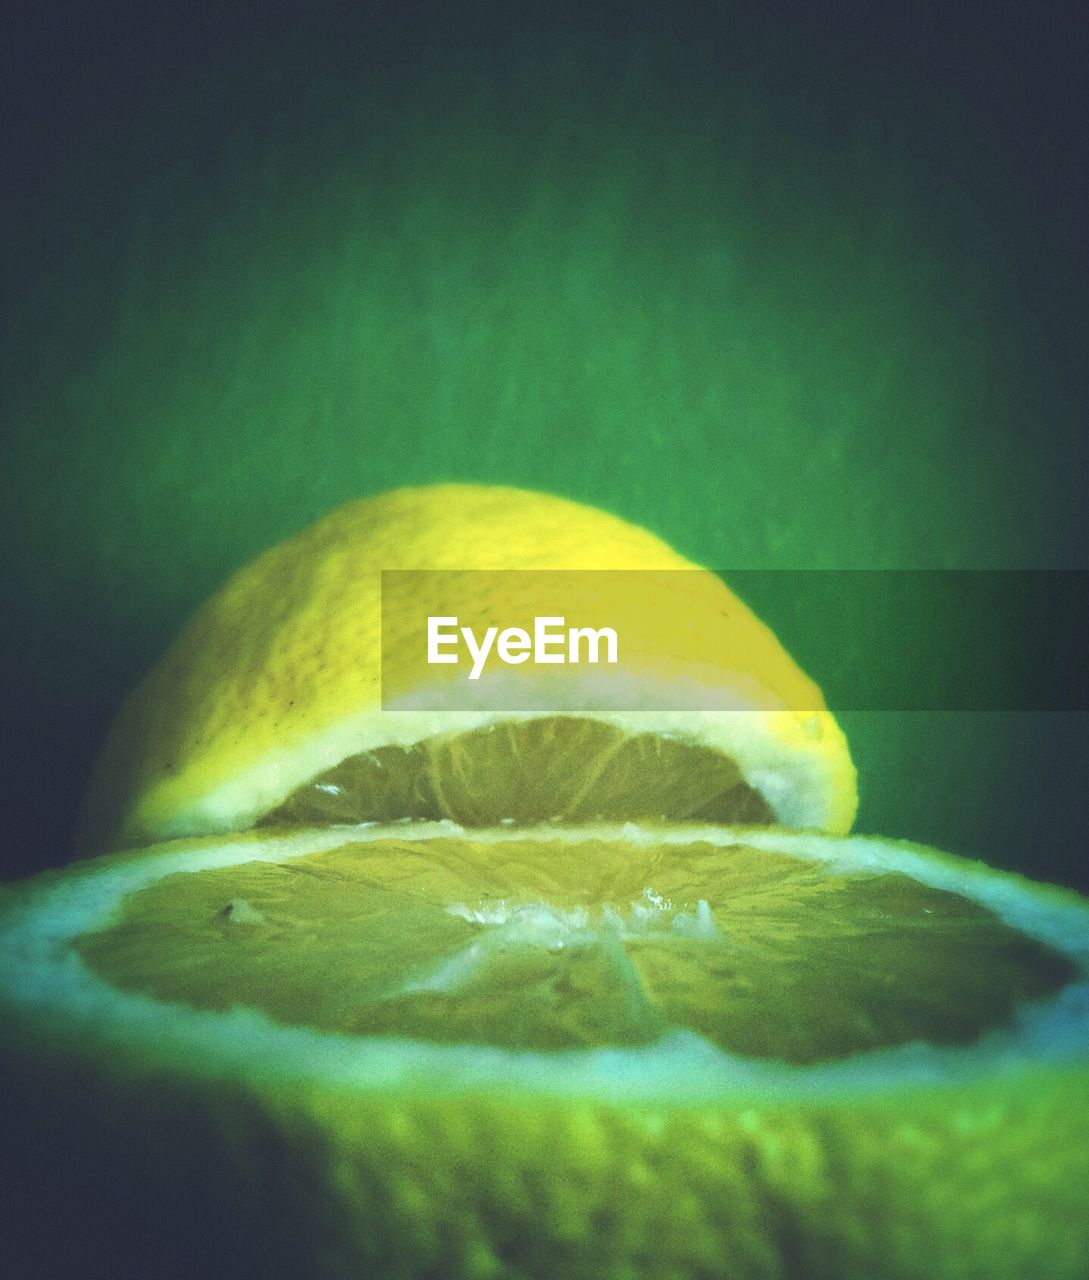 Close-up view of lemon cut in half